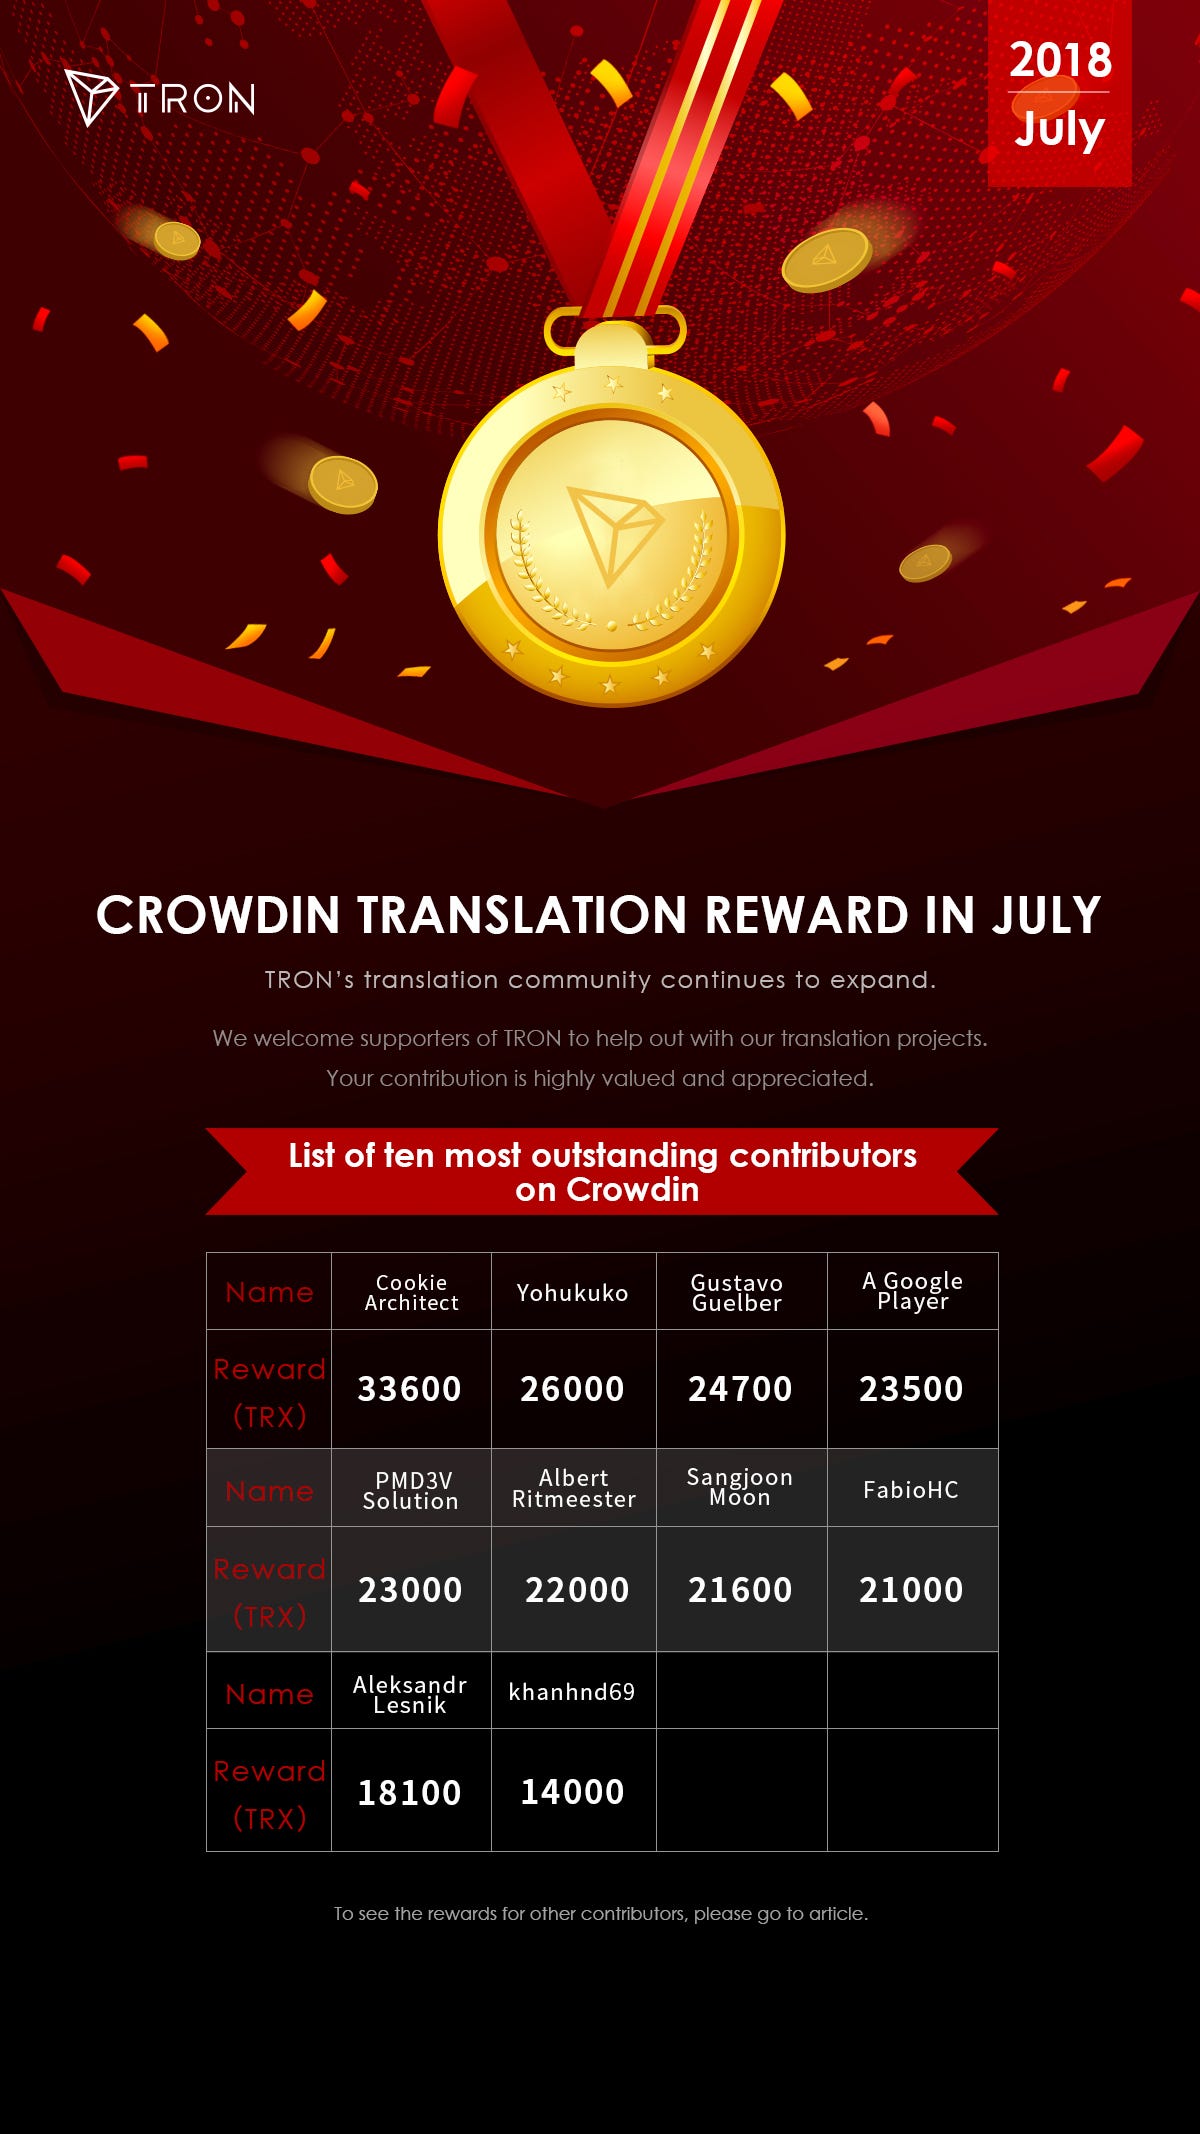 Tron’s (TRX) 121 Translators Get 170,000 TRX Reward